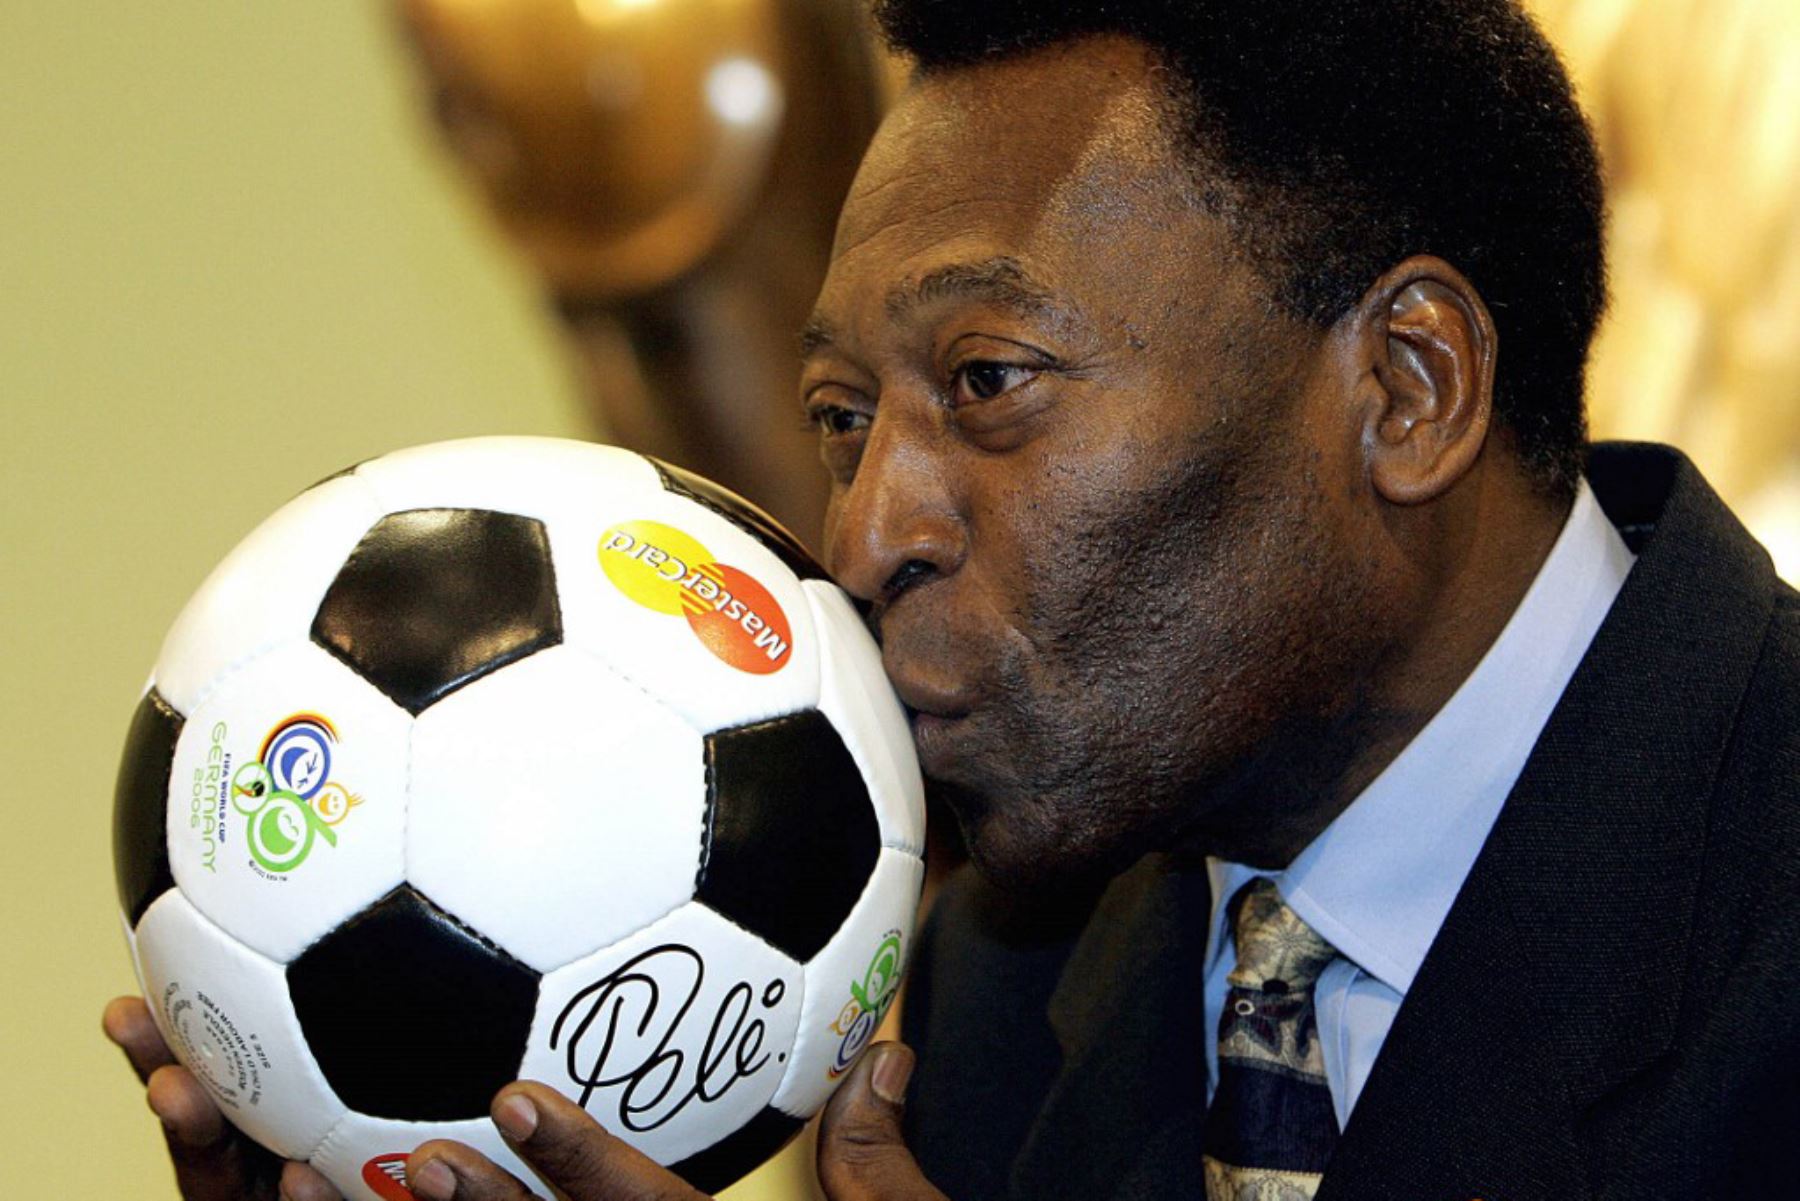 La leyenda del fútbol brasileño Pelé besa una pelota de fútbol durante una presentación en Leipzig, en la víspera del sorteo final de la Copa Mundial de Fútbol de la FIFA 2006. Foto: AFP